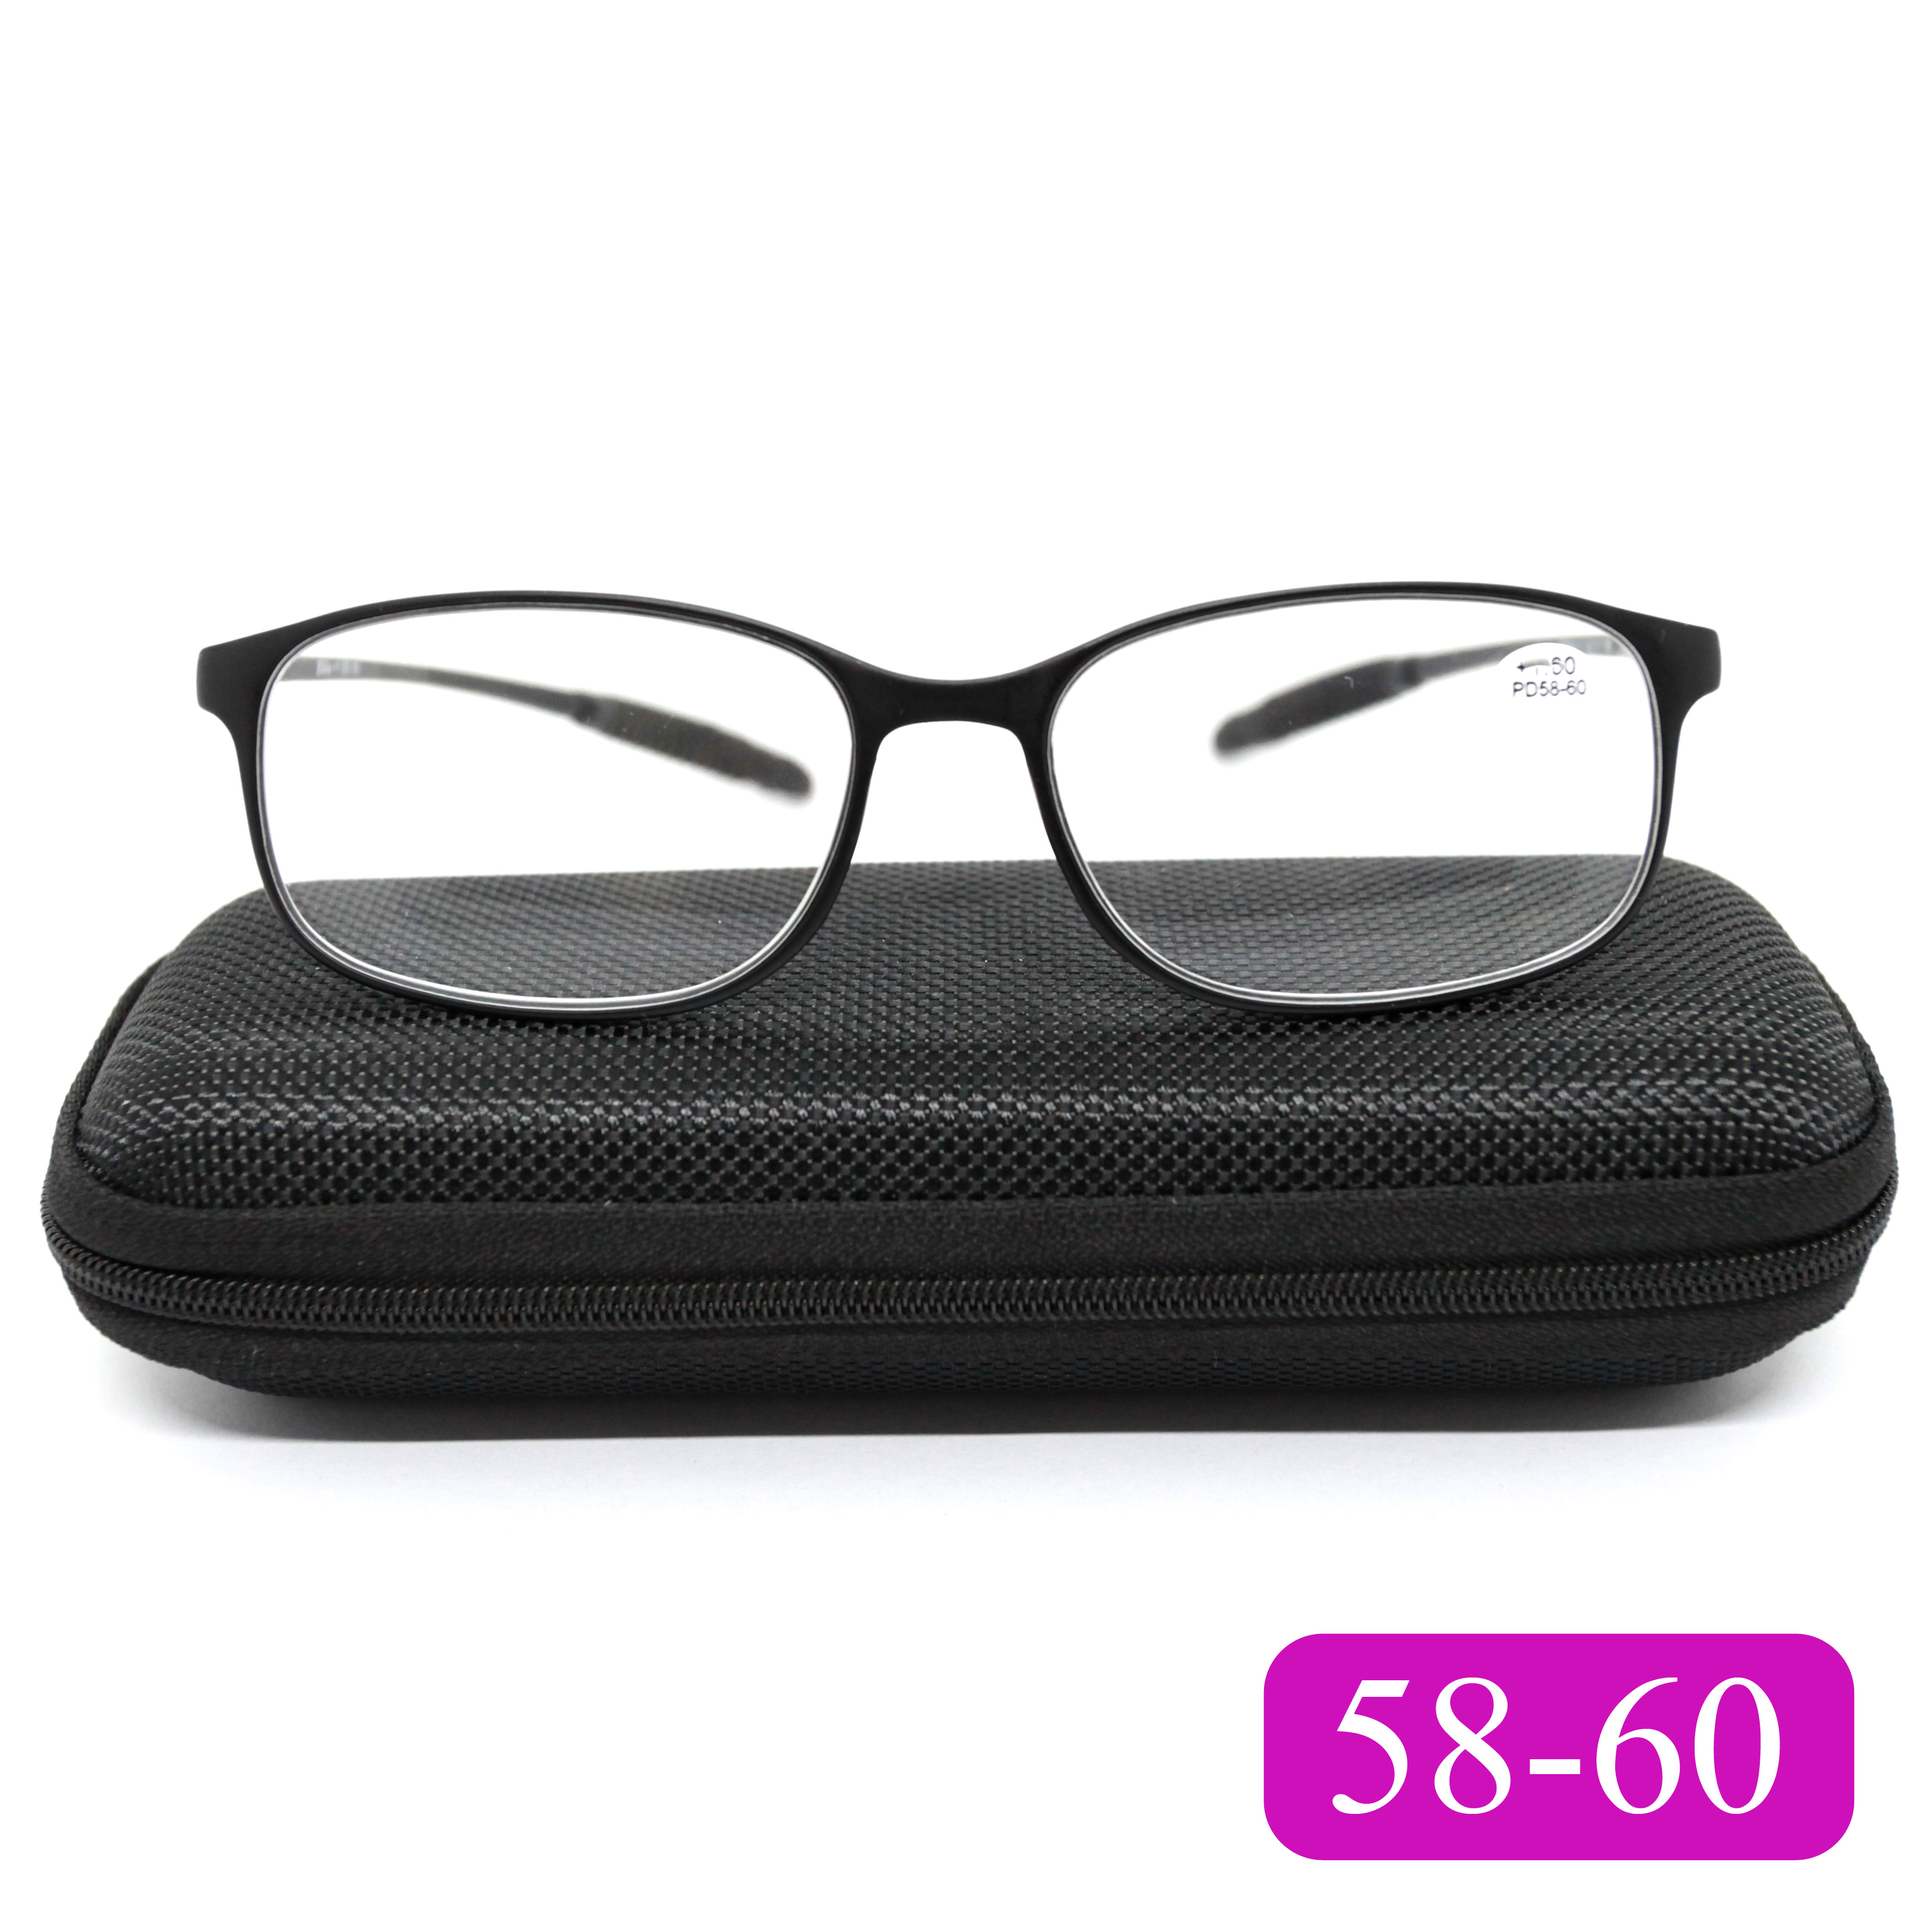 Готовые очки карбоновые TR259 +2,00, для чтения, c футляром, черный, РЦ 58-60